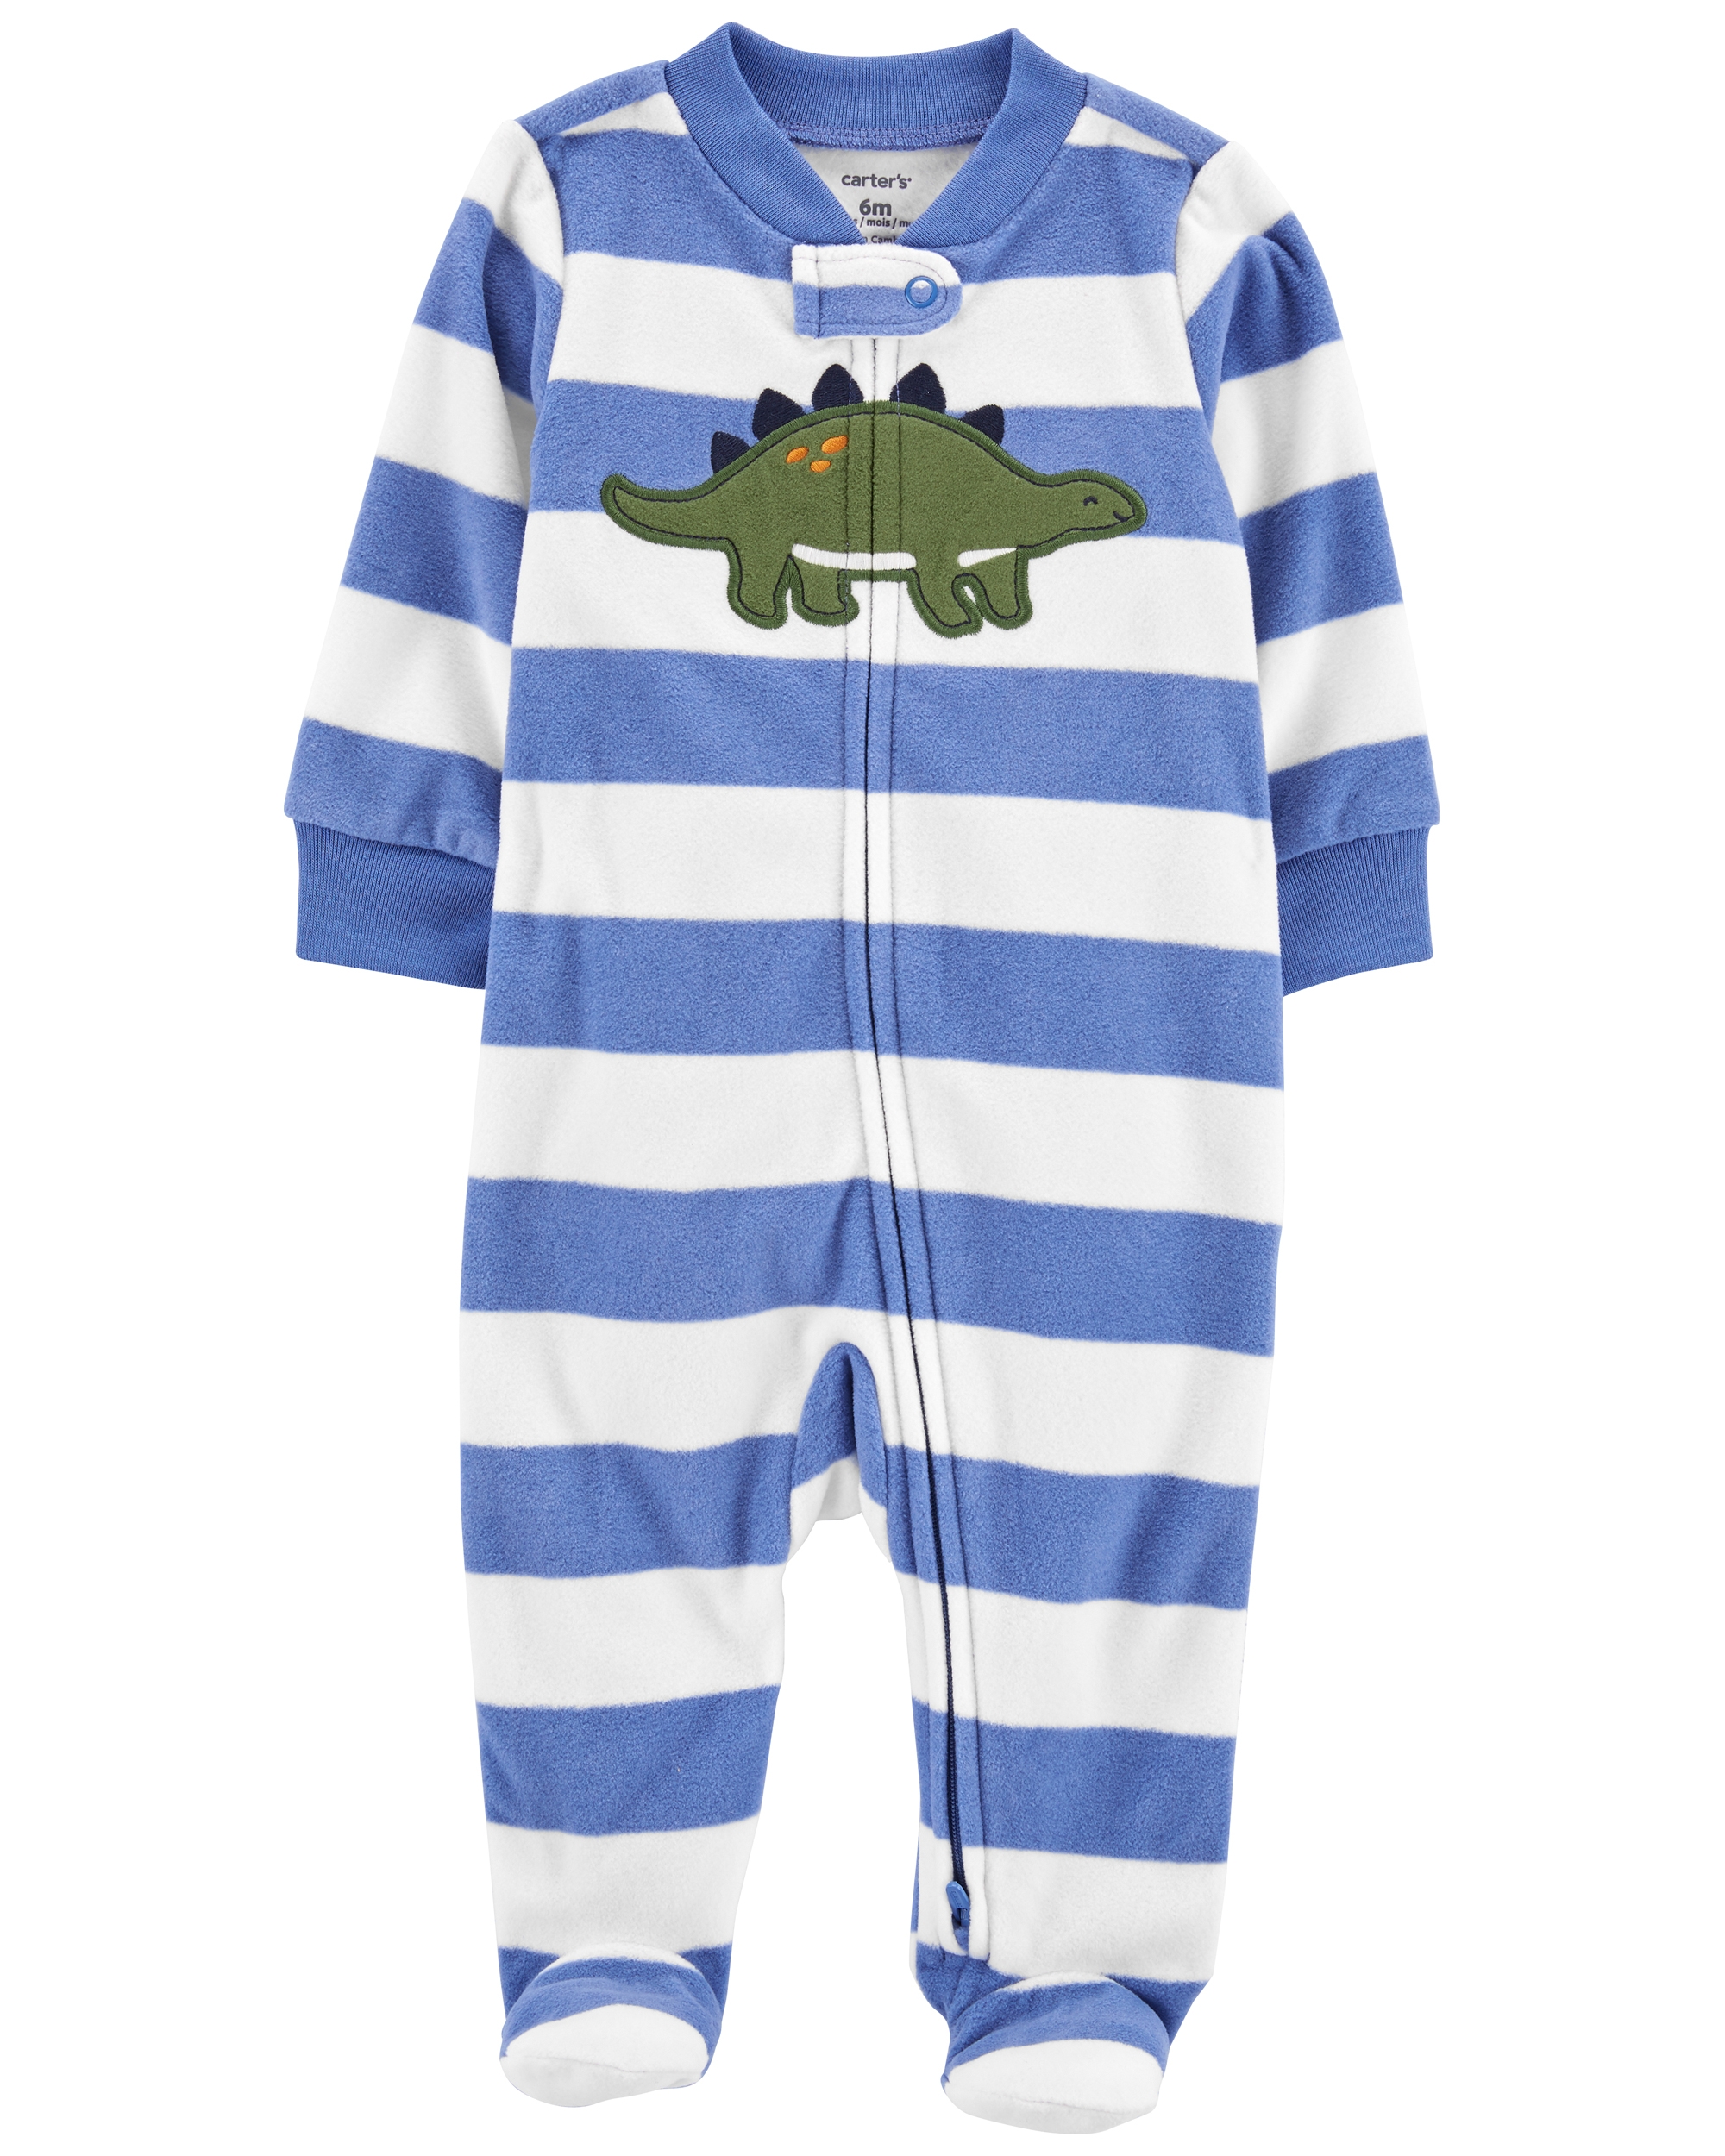 Carter’s Pijama fleece Dinozaur Carter's